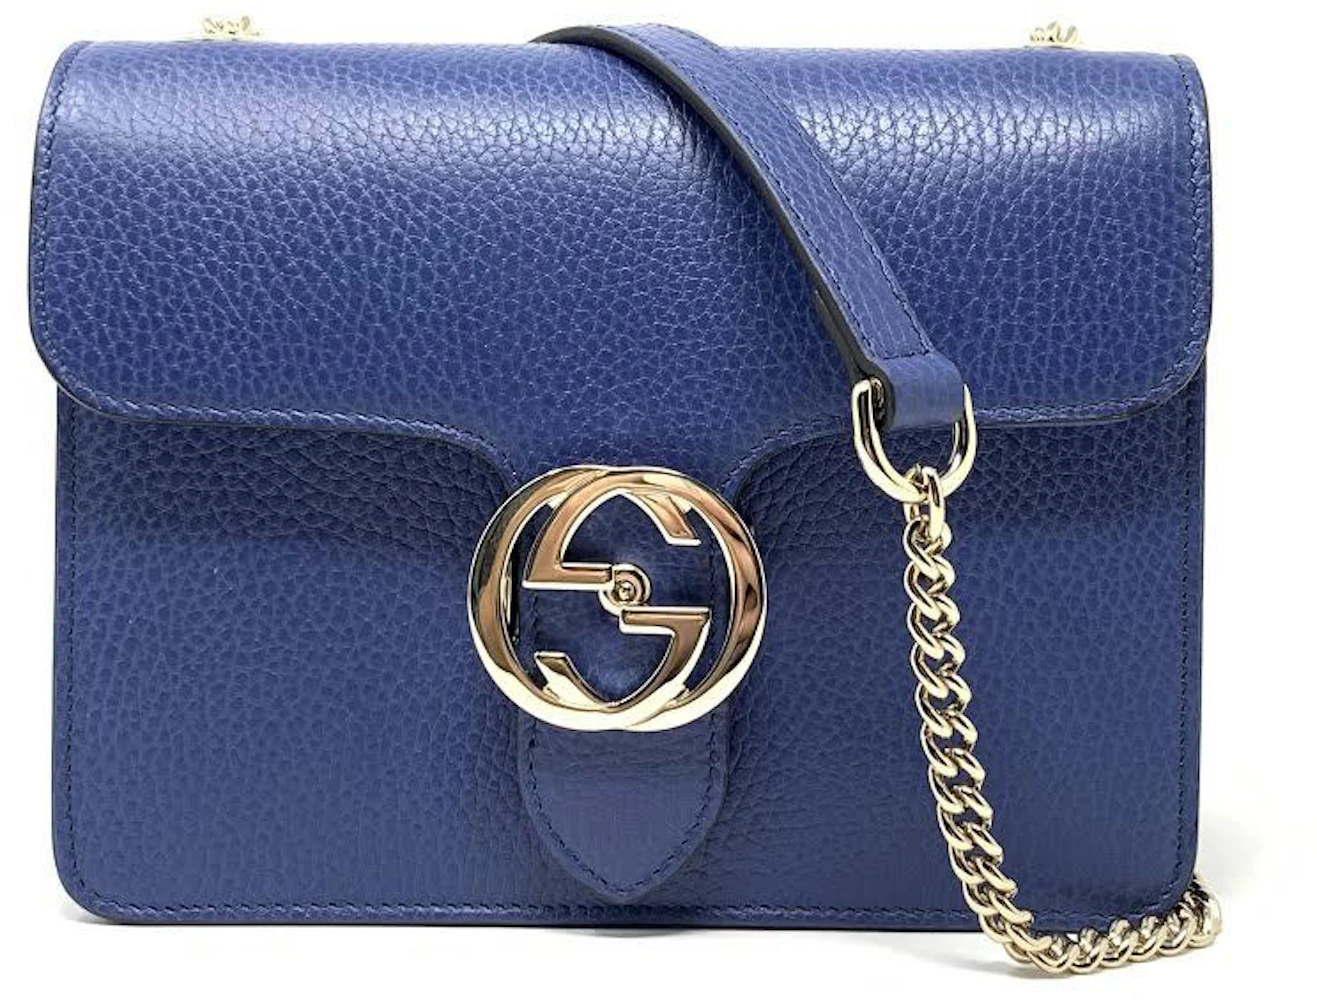 Gucci Peal Pebbled Calfskin Leather Interlocking G Shoulder Bag